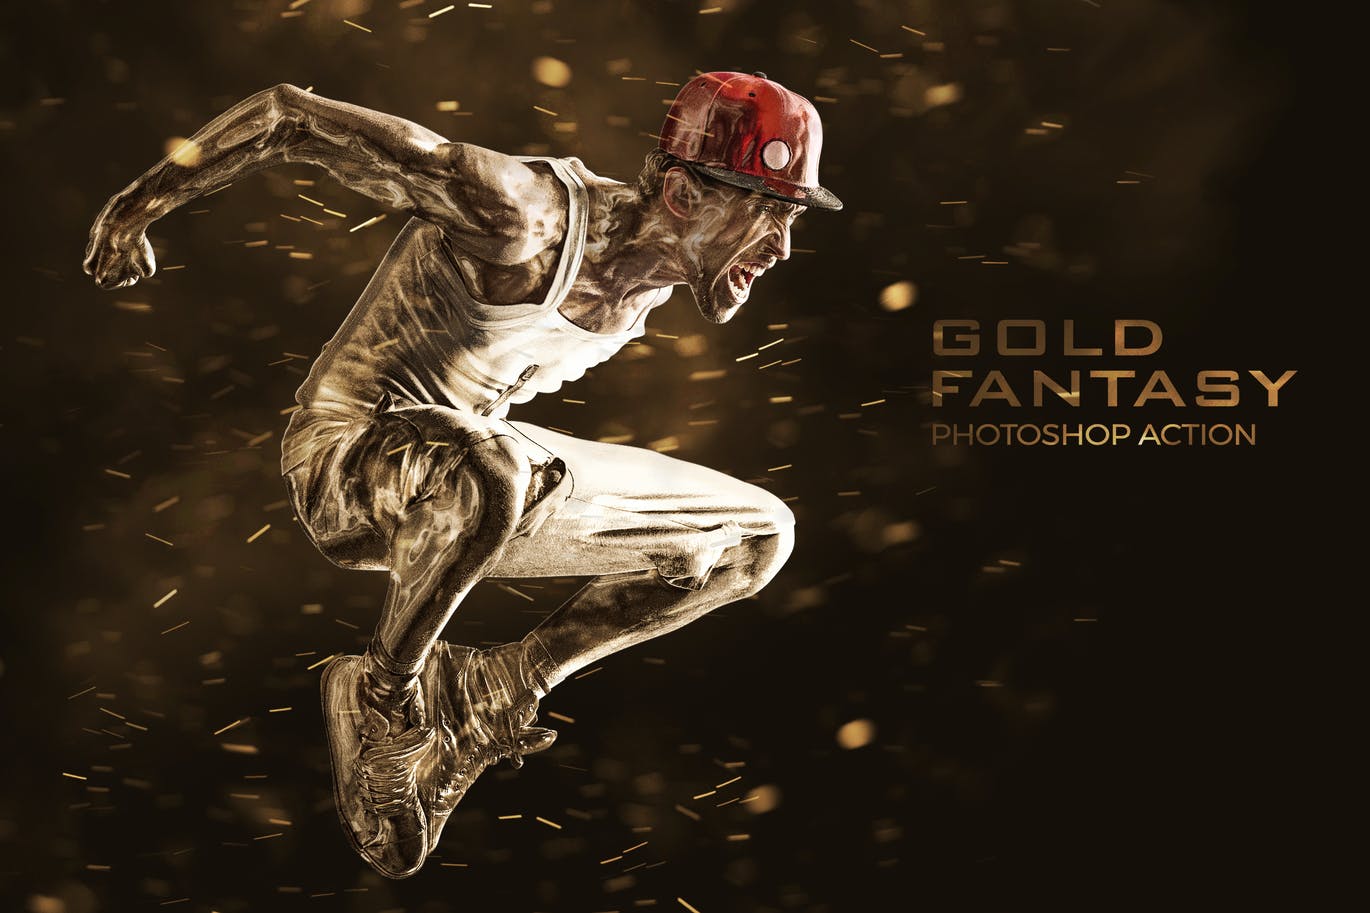 金色漆面效果照片处理PS动作 Gold Fantasy Photoshop Action 插件预设 第1张